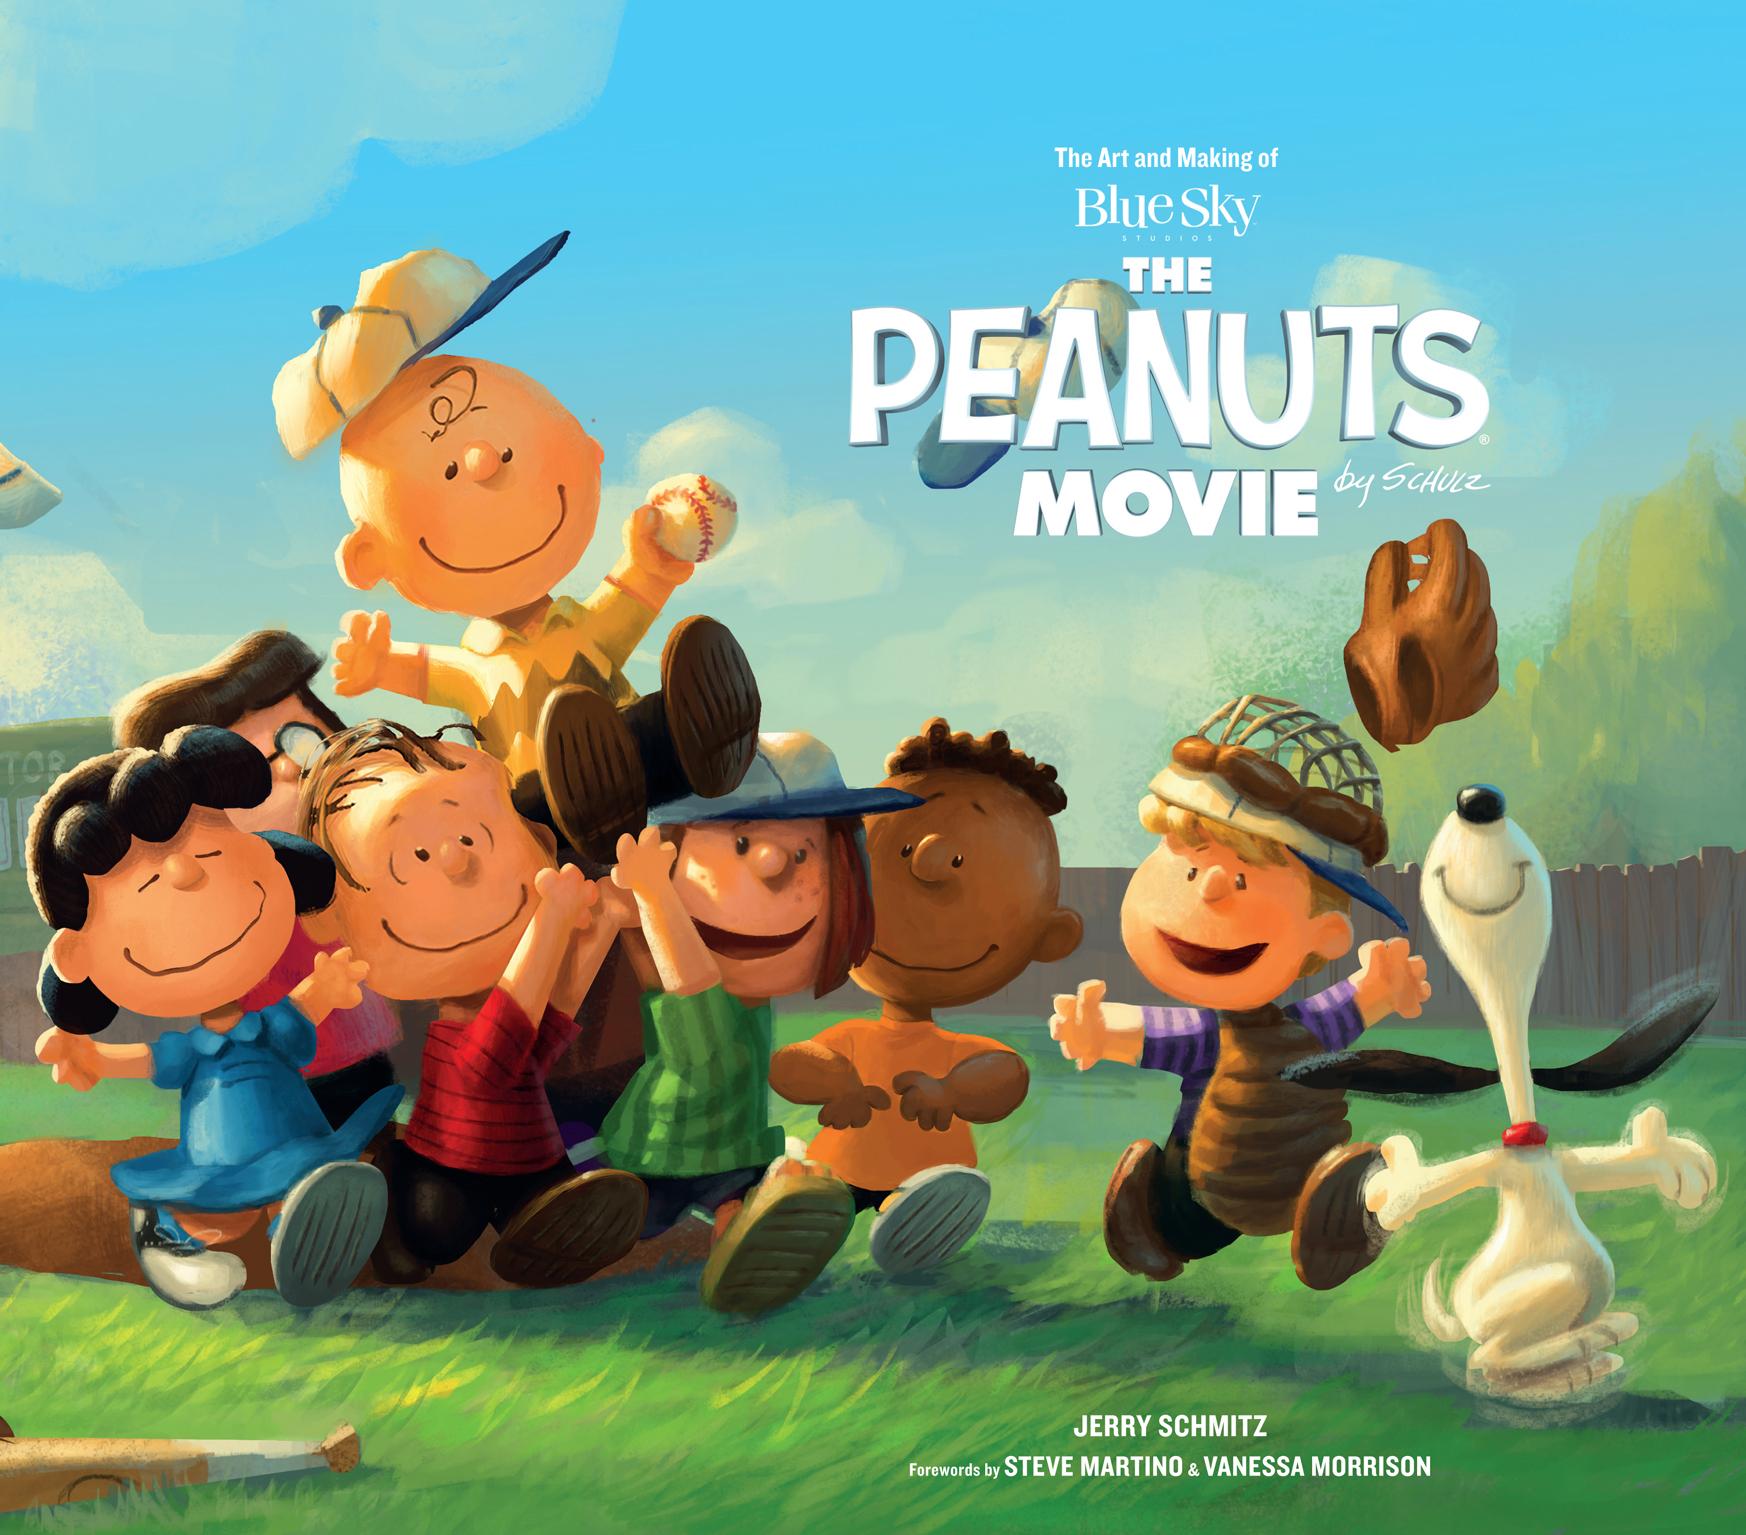 The peanuts movie